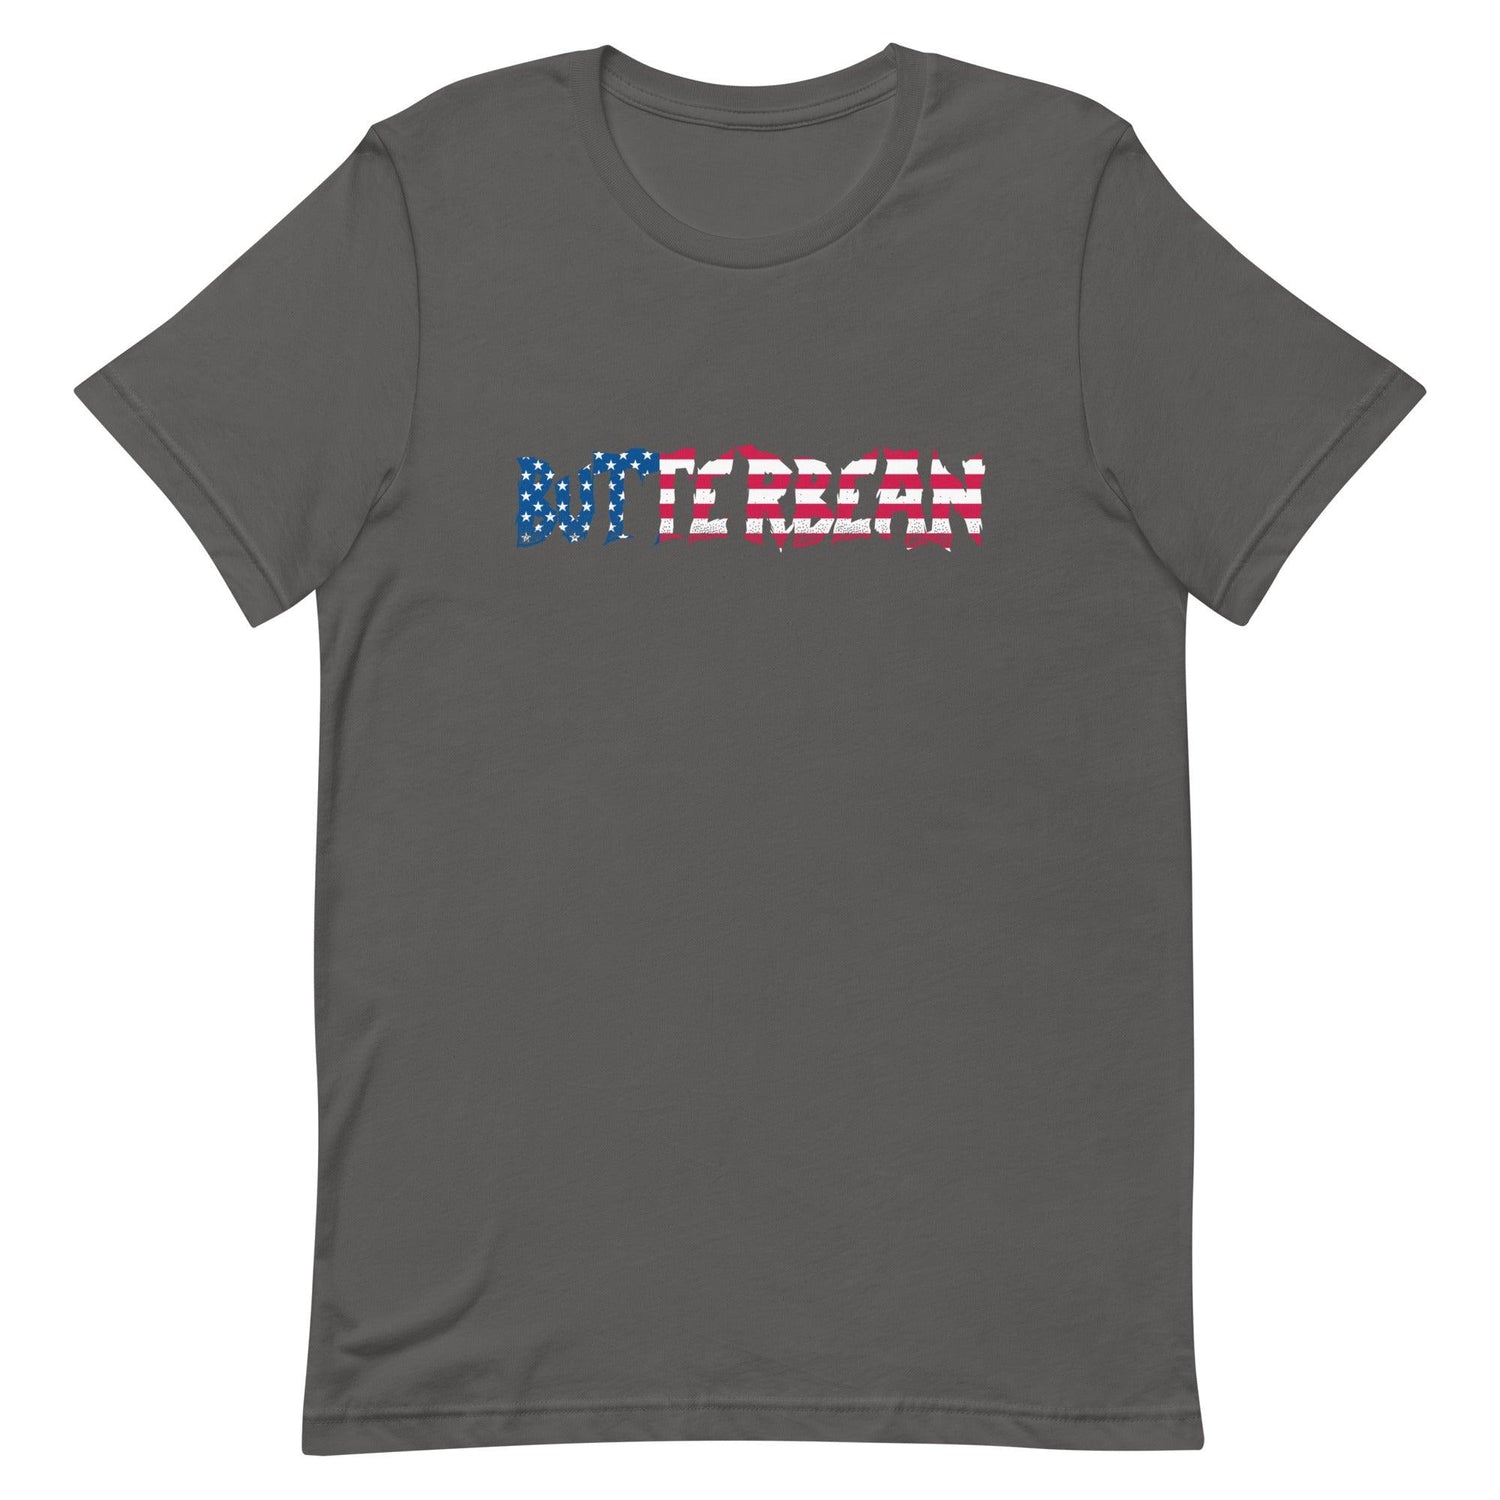 Butterbean "USA" t-shirt - Fan Arch